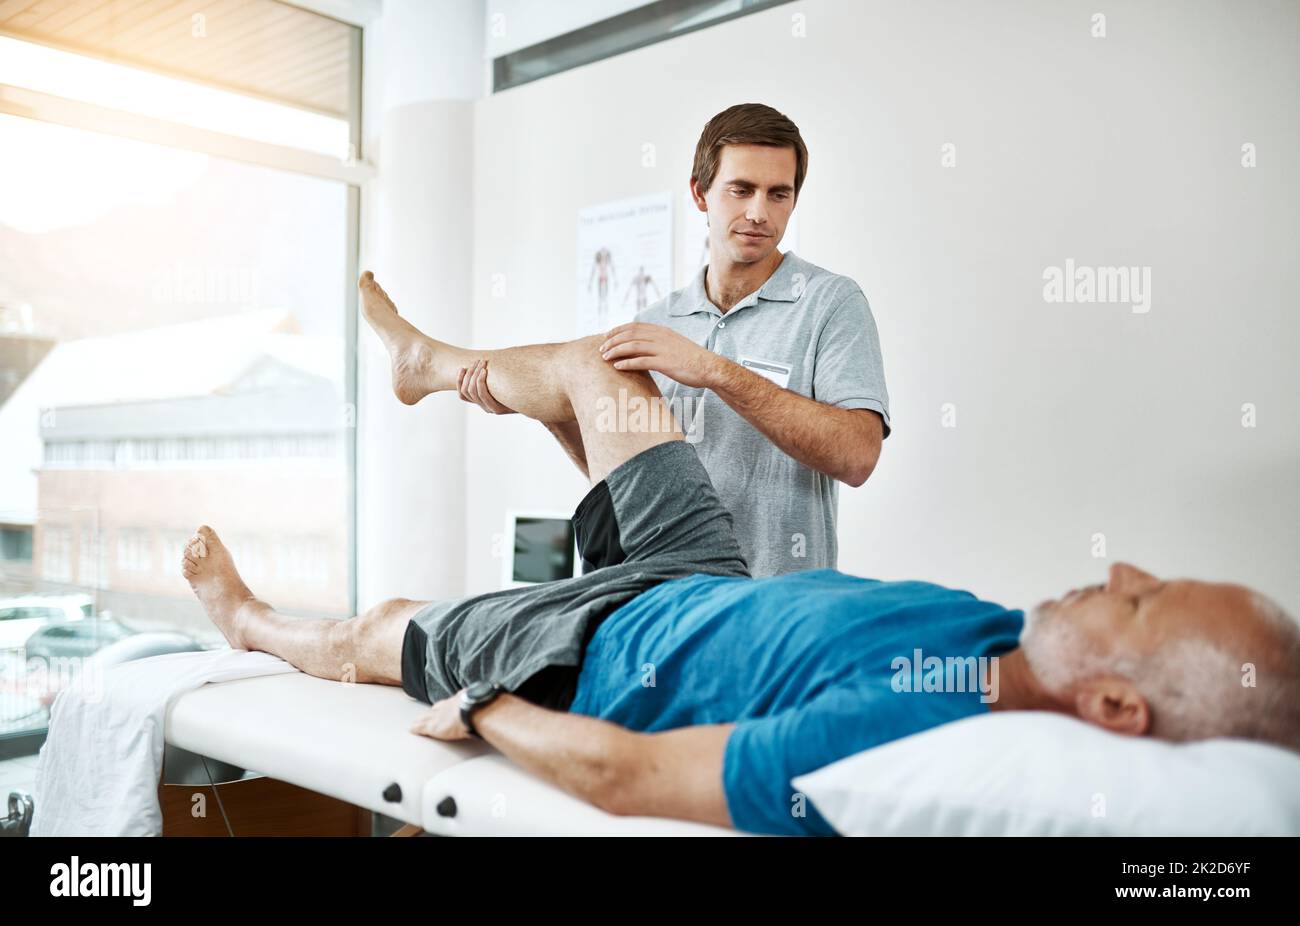 La santé des clients est sa seule préoccupation. Photo d'un jeune kinésithérapeute masculin aidant un client avec des exercices de jambe qui se trouvent sur un lit. Banque D'Images